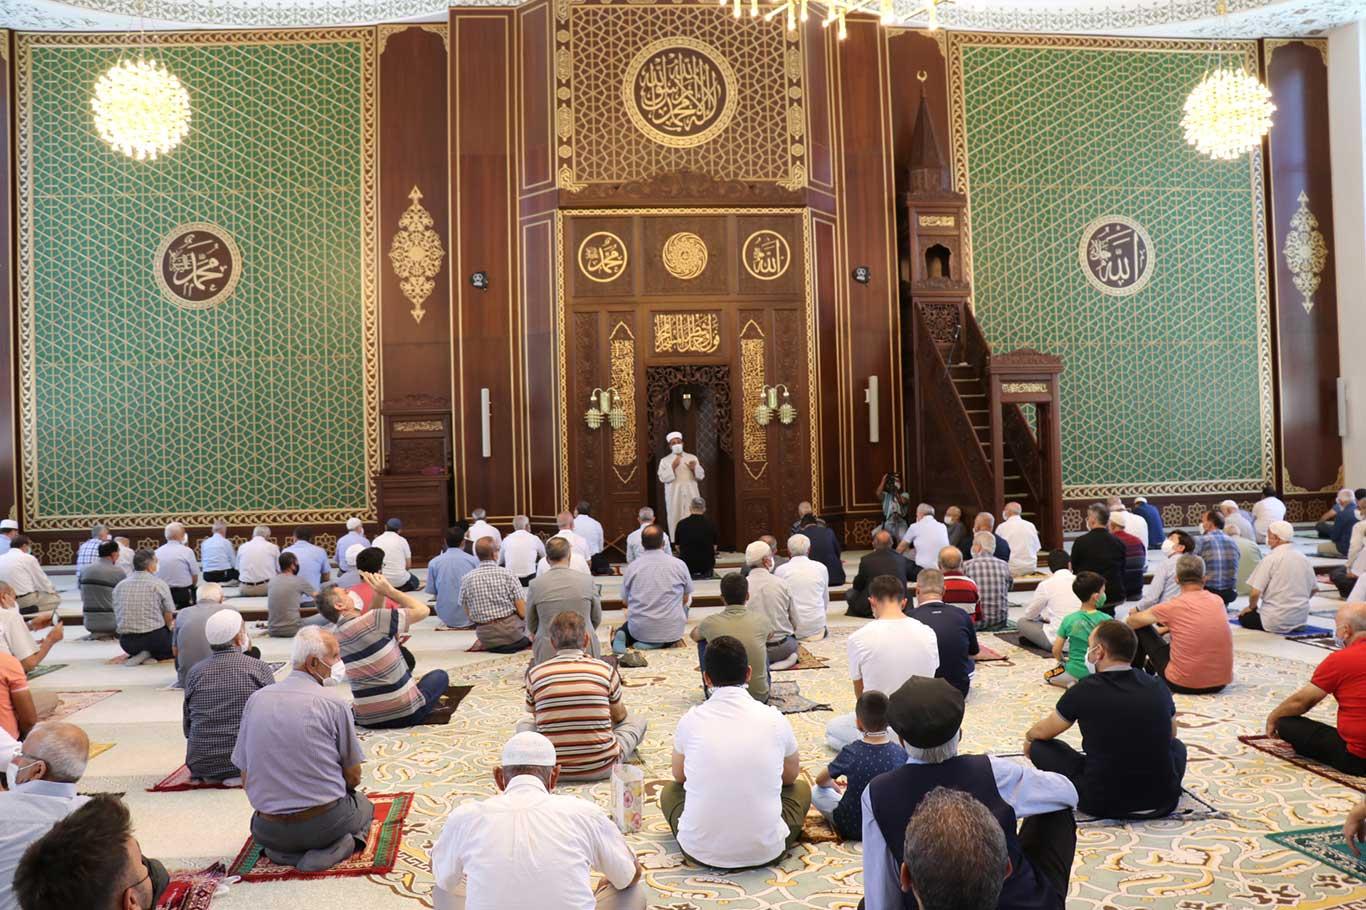 Malatya'nın en büyük camii dualarla ibadete açıldı